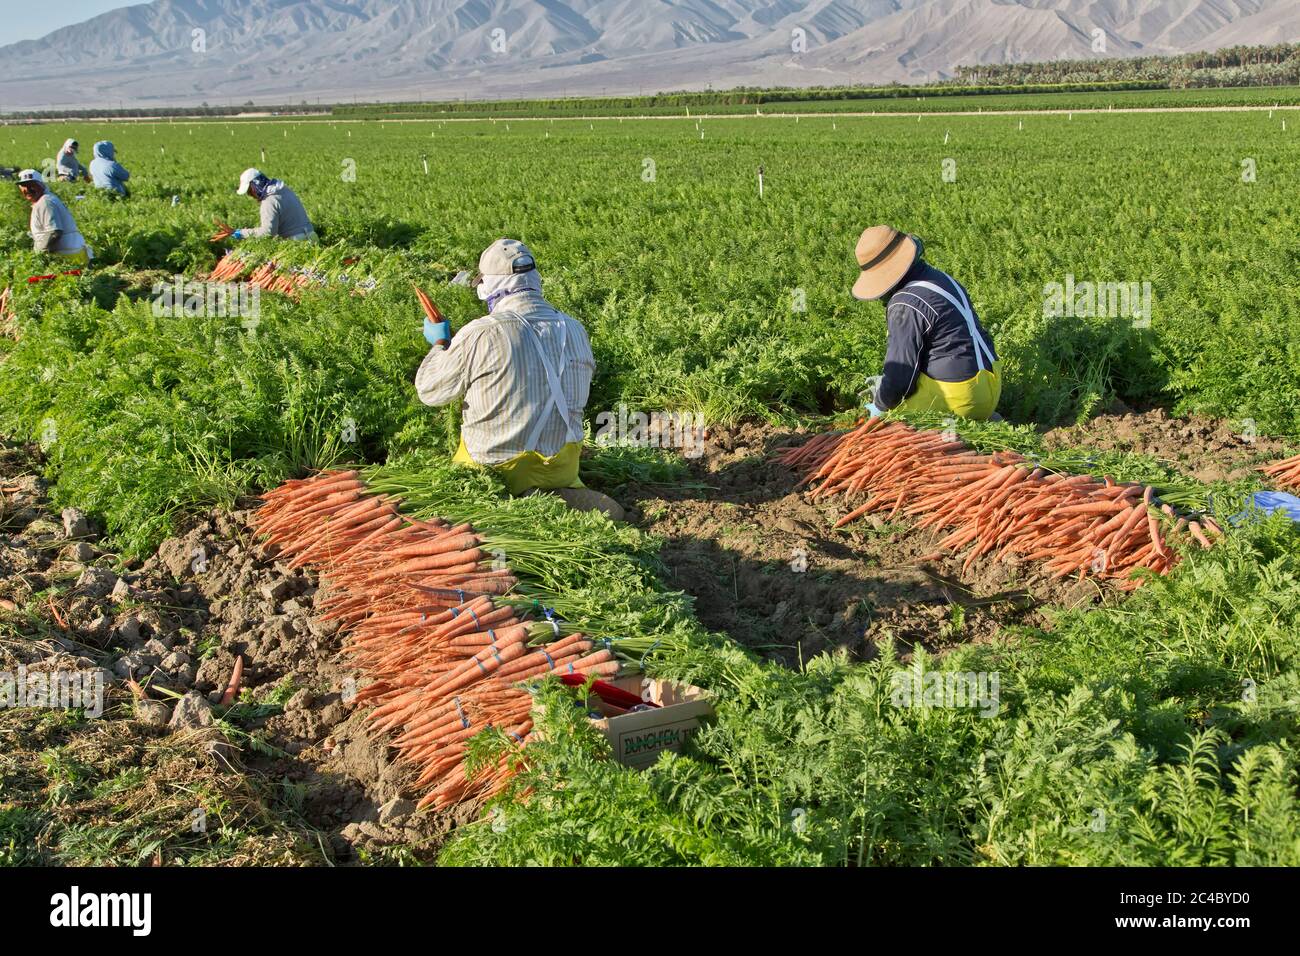 Lavoratori agricoli ispanici che raccolgono il campo di carote biologiche 'Deauus carota', piantagione di palma da dattero in lontananza, Valle di Coachella. Foto Stock